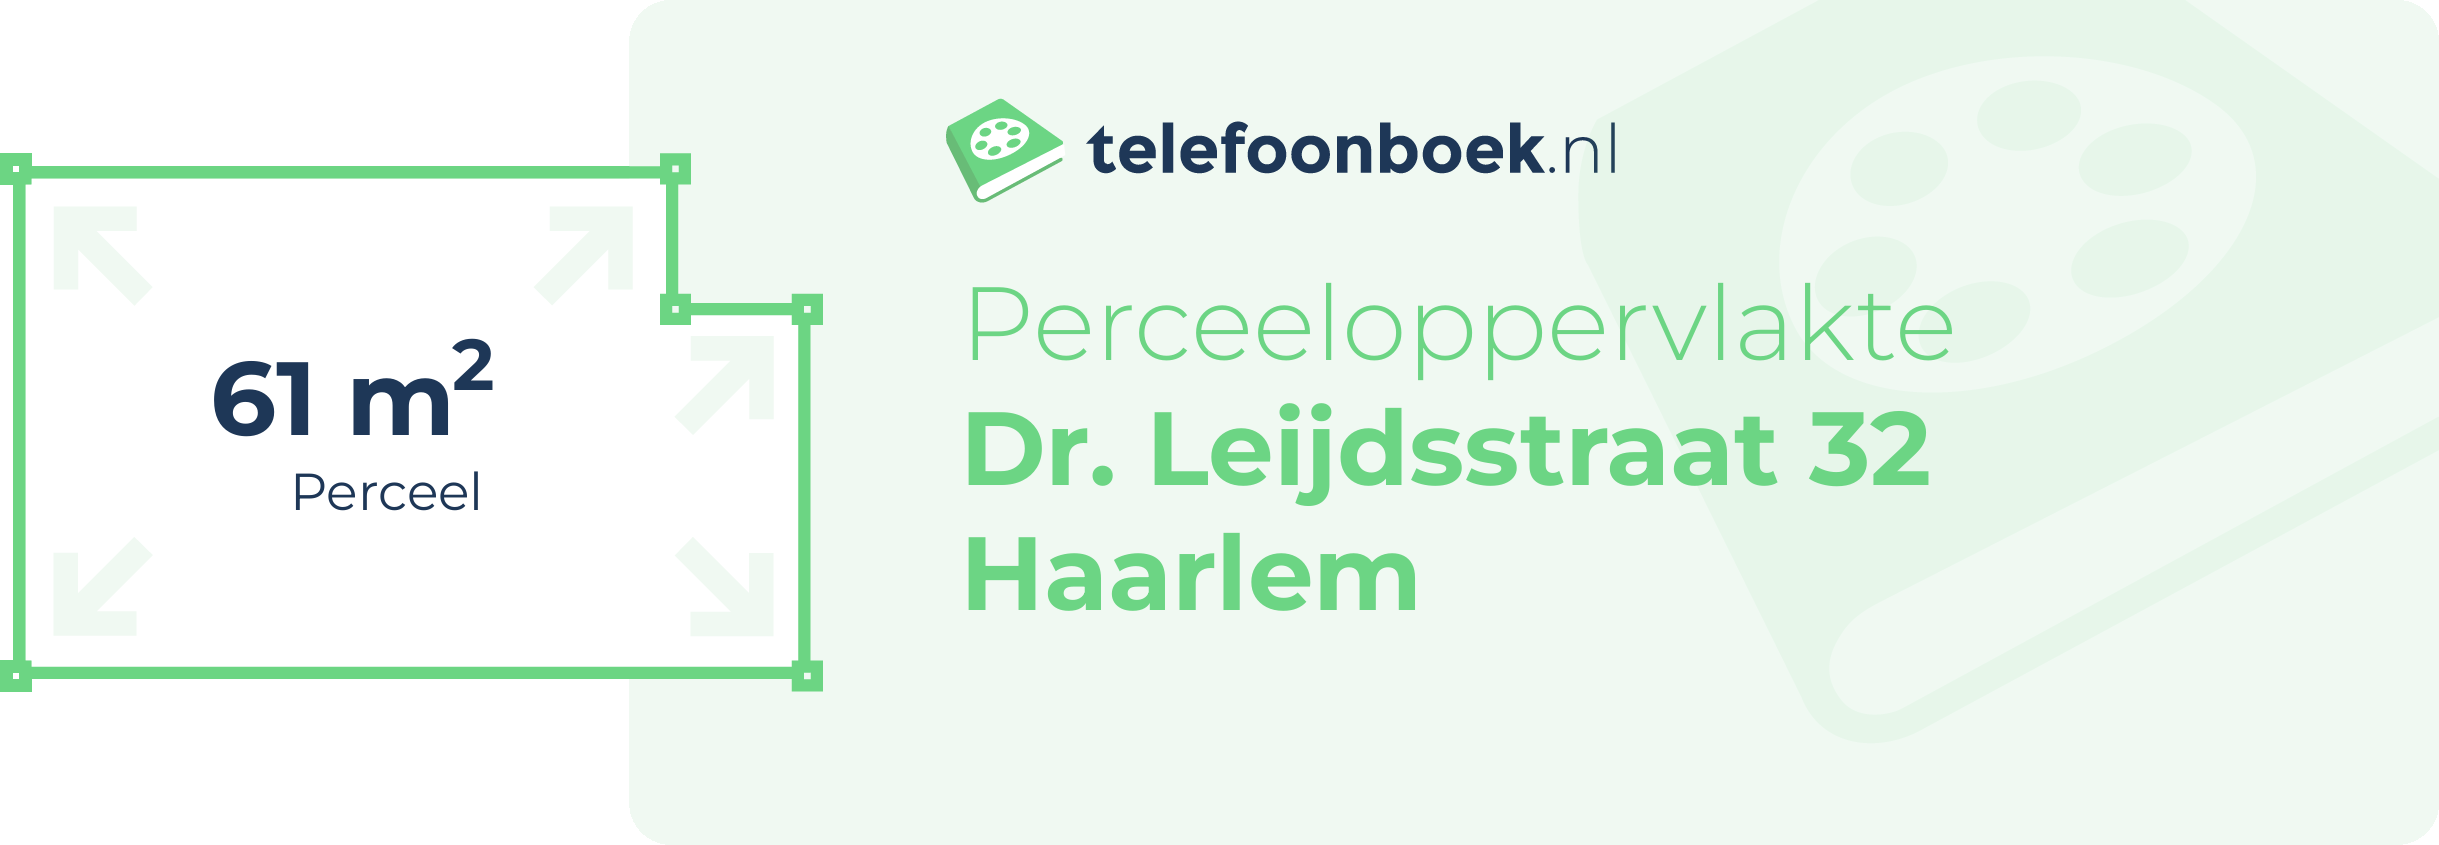 Perceeloppervlakte Dr. Leijdsstraat 32 Haarlem